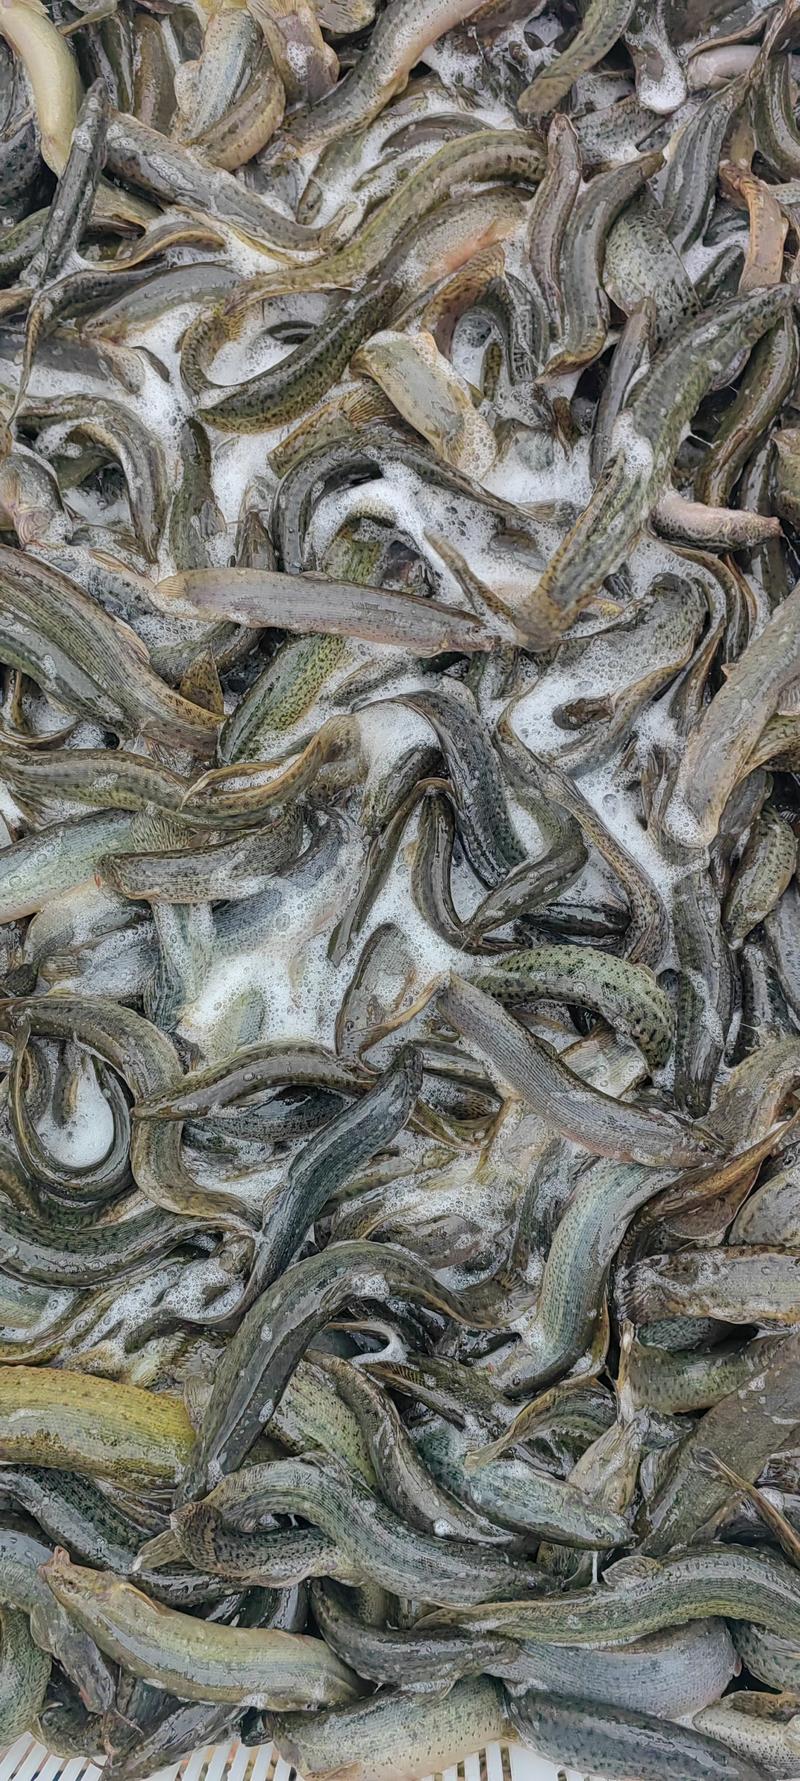 【精品】台湾泥鳅大量现货自产自销一手货源量大价优欢迎合作